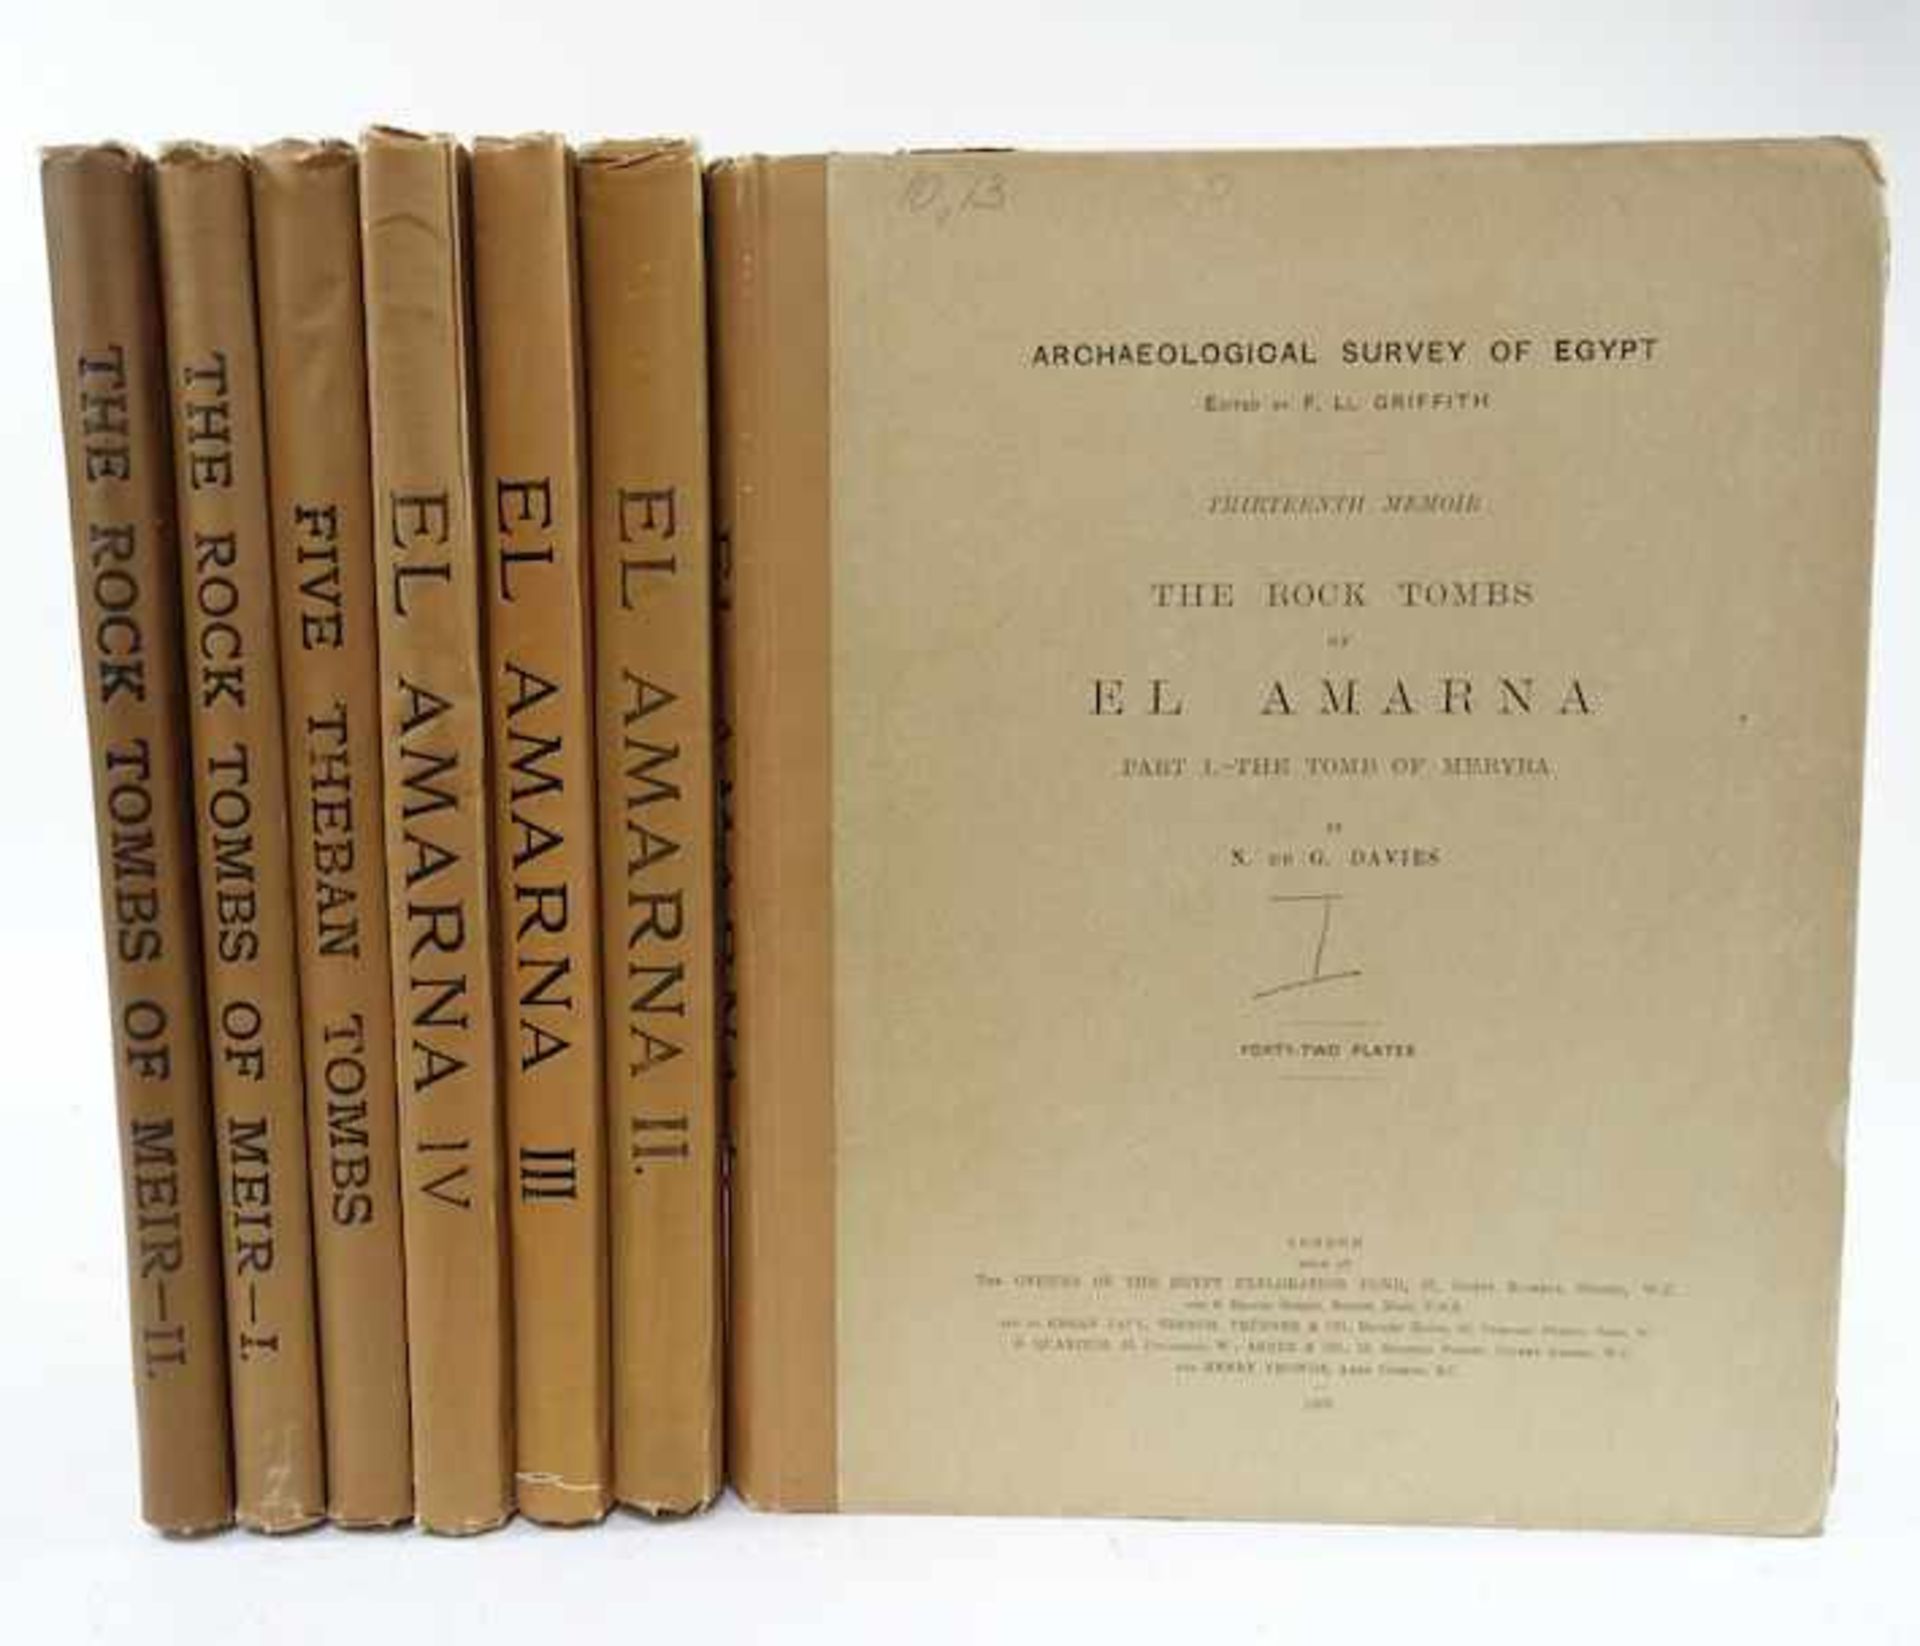 GARIS DAVIES, N. de. The rock tombs of El Amarna. Pt. I- IV. 1903-06. 4 vols. W. 174 plates. --